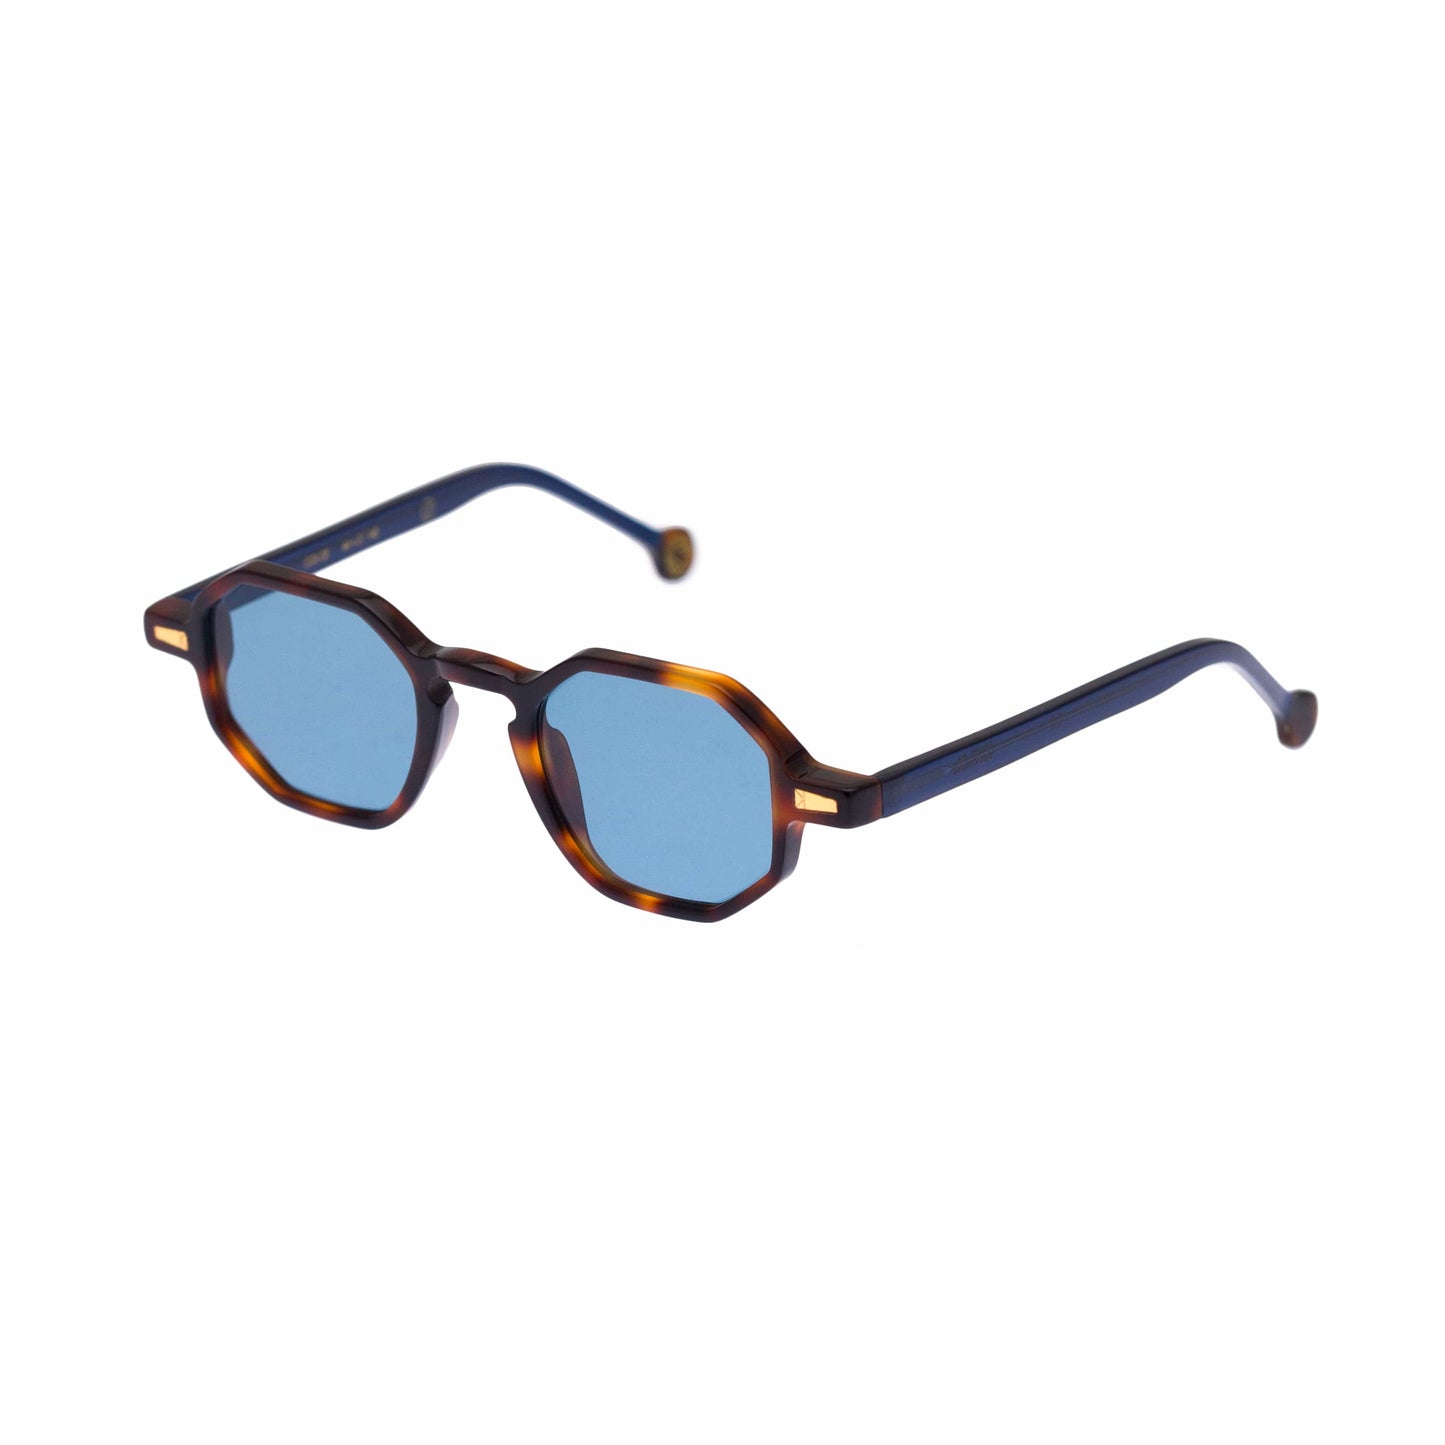 Kyme Occhiali da sole Kyme Rio: occhiale da sole poligonale made in Italy